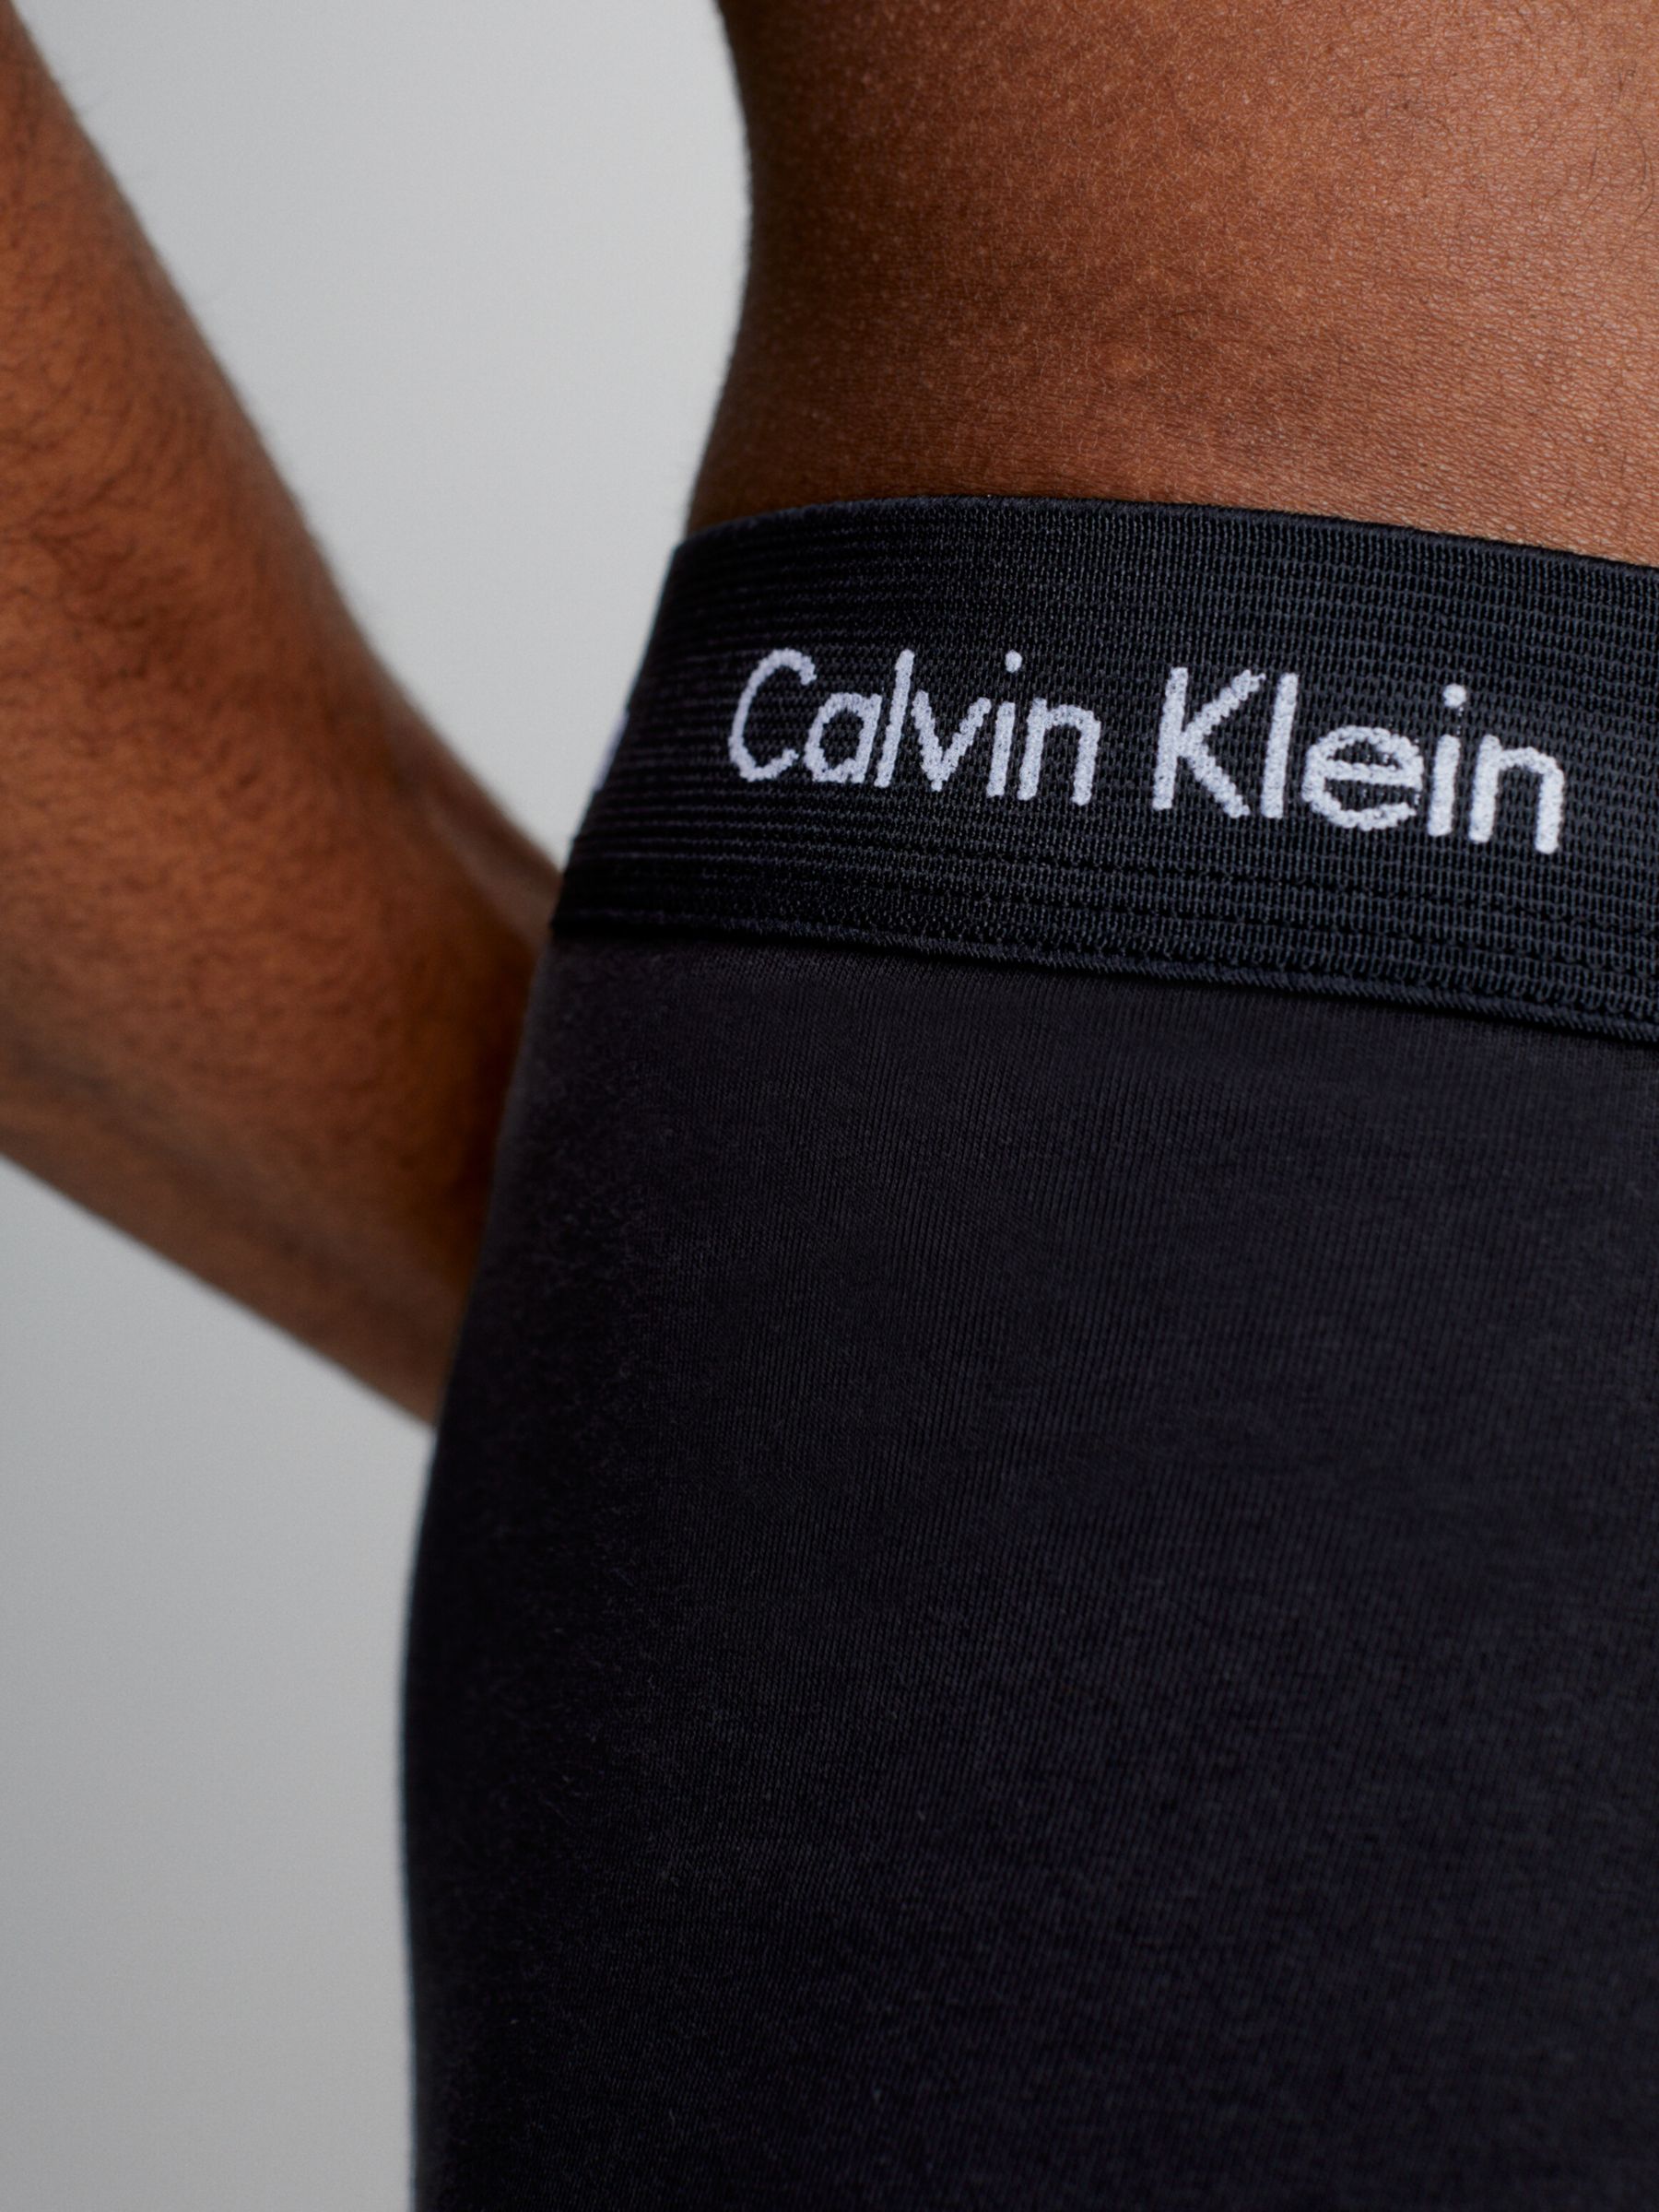 Calvin Klein Women's Modern Cotton Boxer Brief, Black,M - US